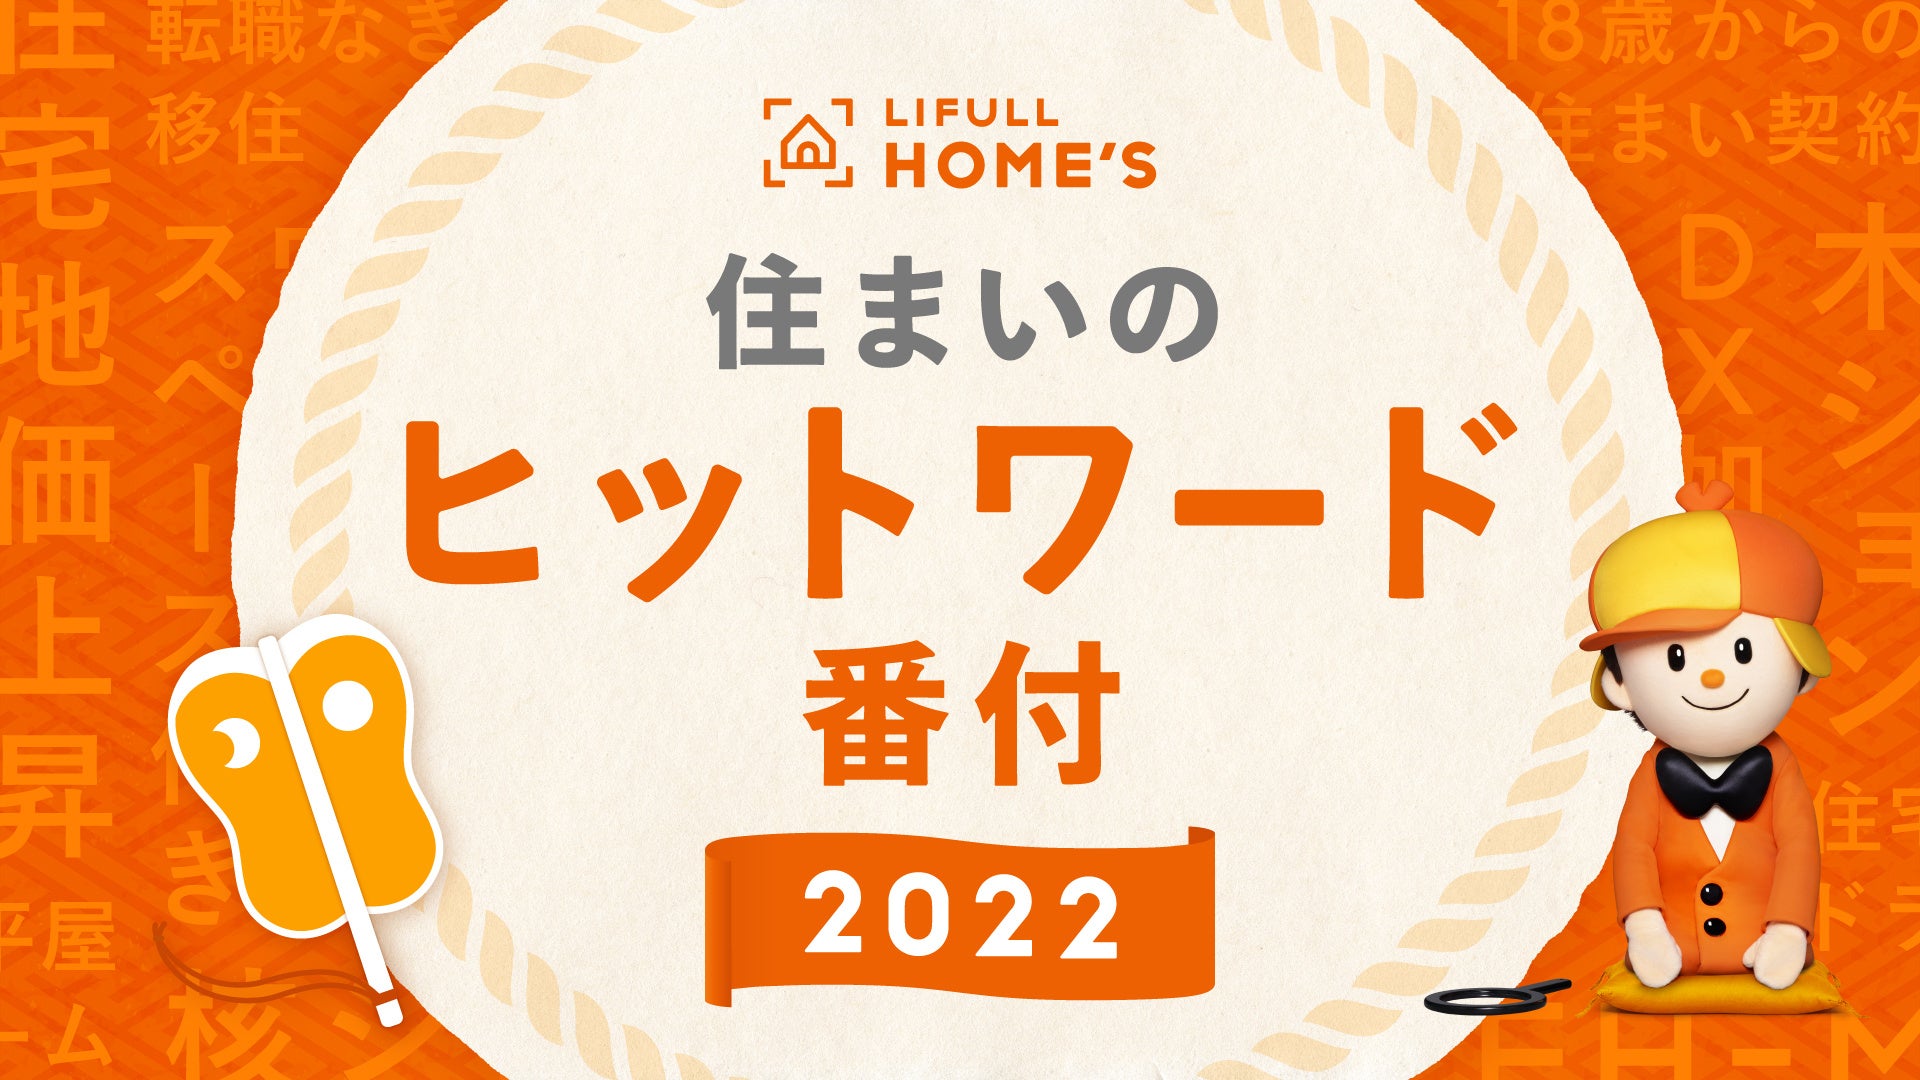 2022年、住まいのトレンドを振り返る「LIFULL HOME'S 住まいのヒットワード番付 2022」を初めて発表のサブ画像1